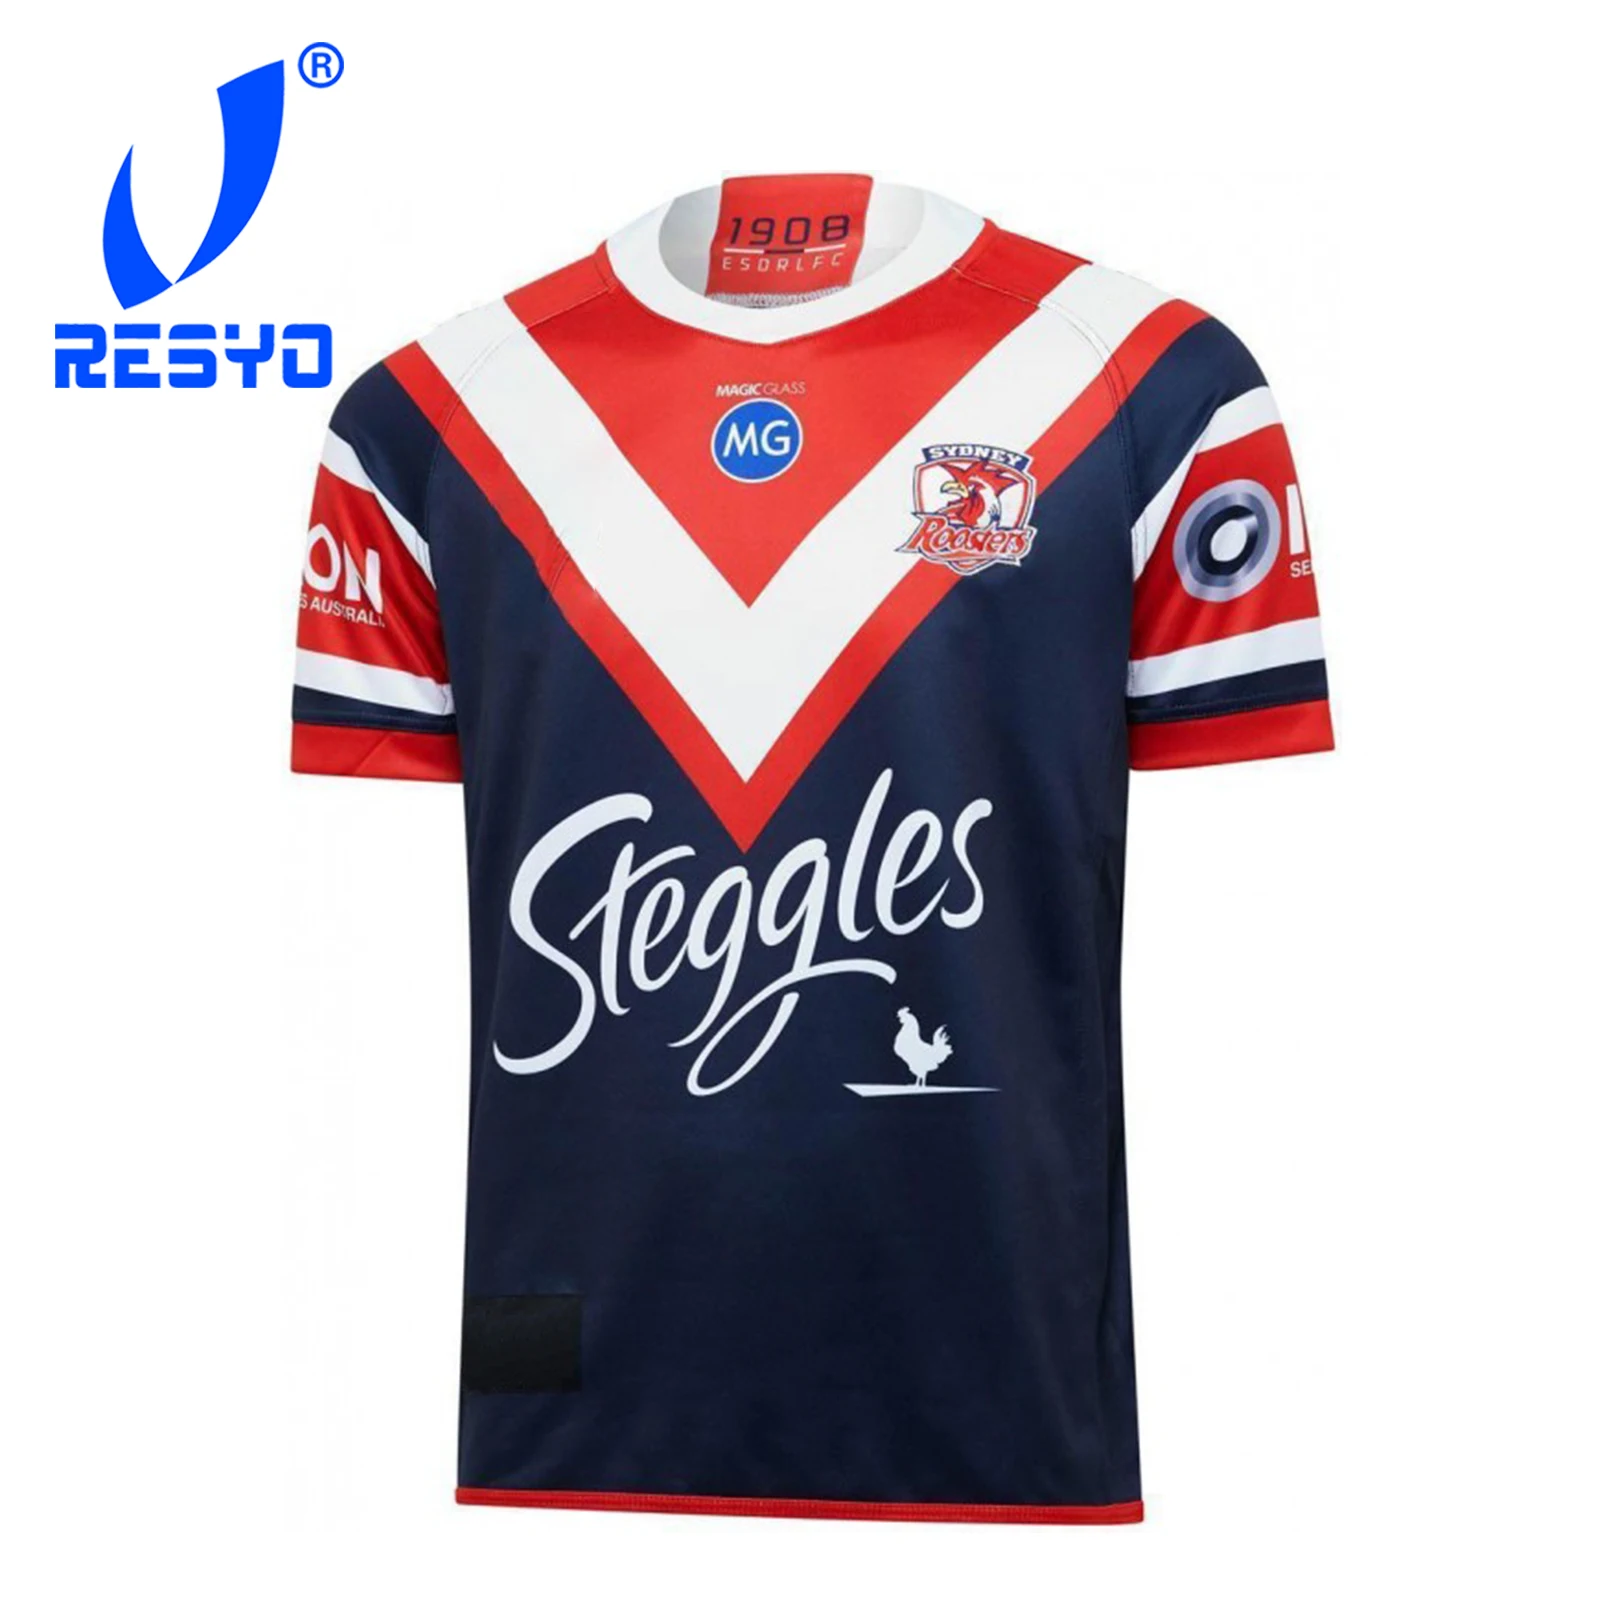 Sport Shirt S 5XL|Rugby Jerseys 